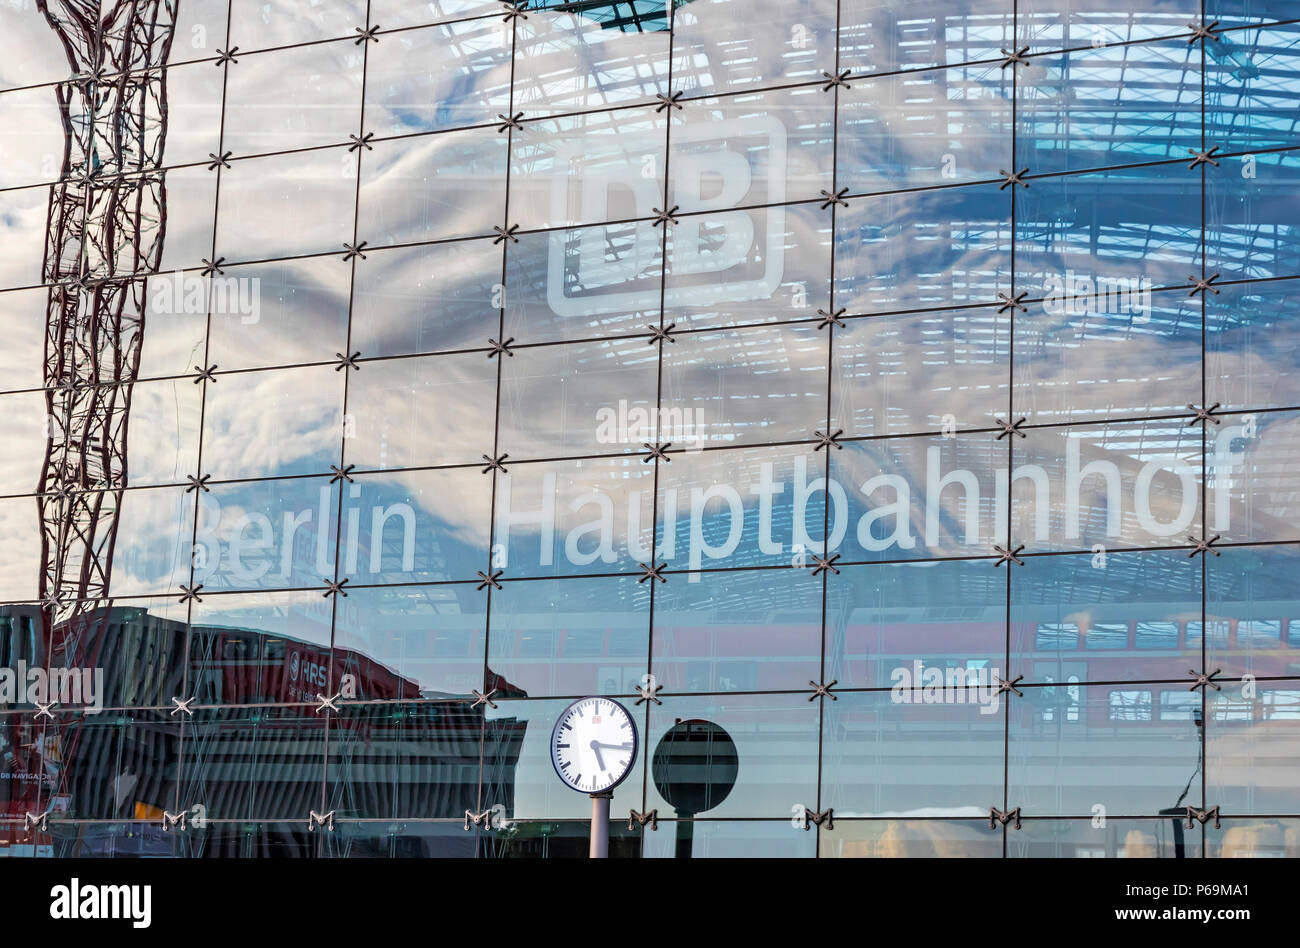 BERLIN, ALLEMAGNE - 20 septembre 2017 : voir la façade de la gare centrale de Berlin (Hauptbahnhof Berlin, Berlin Hbf), Allemagne. Ouverte Station Banque D'Images